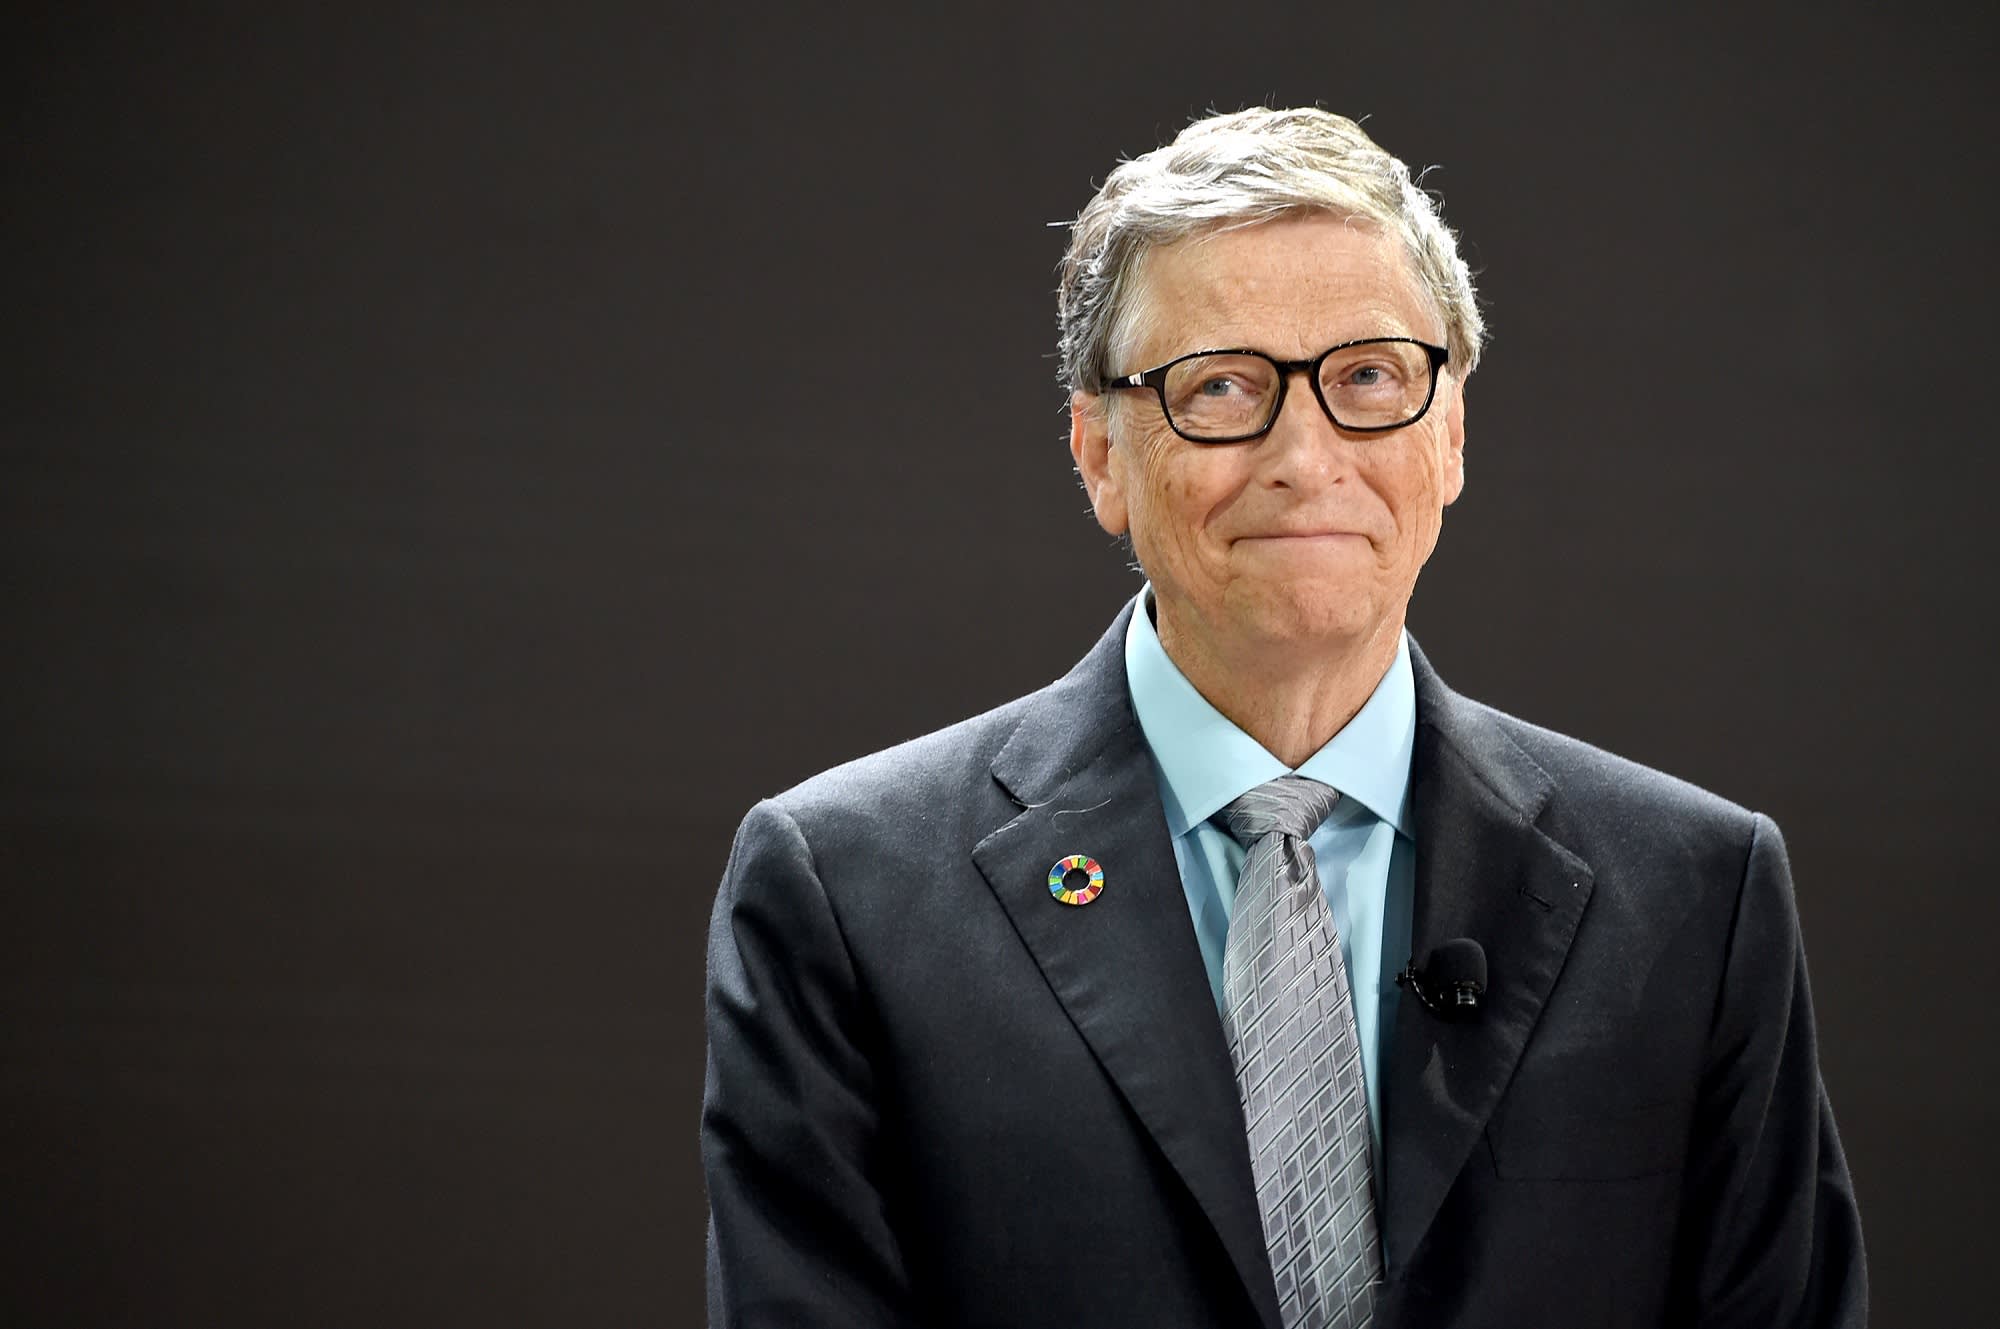 Pánik a bitcoin miatt, Bill Gatesék féltik a vagyonukat?